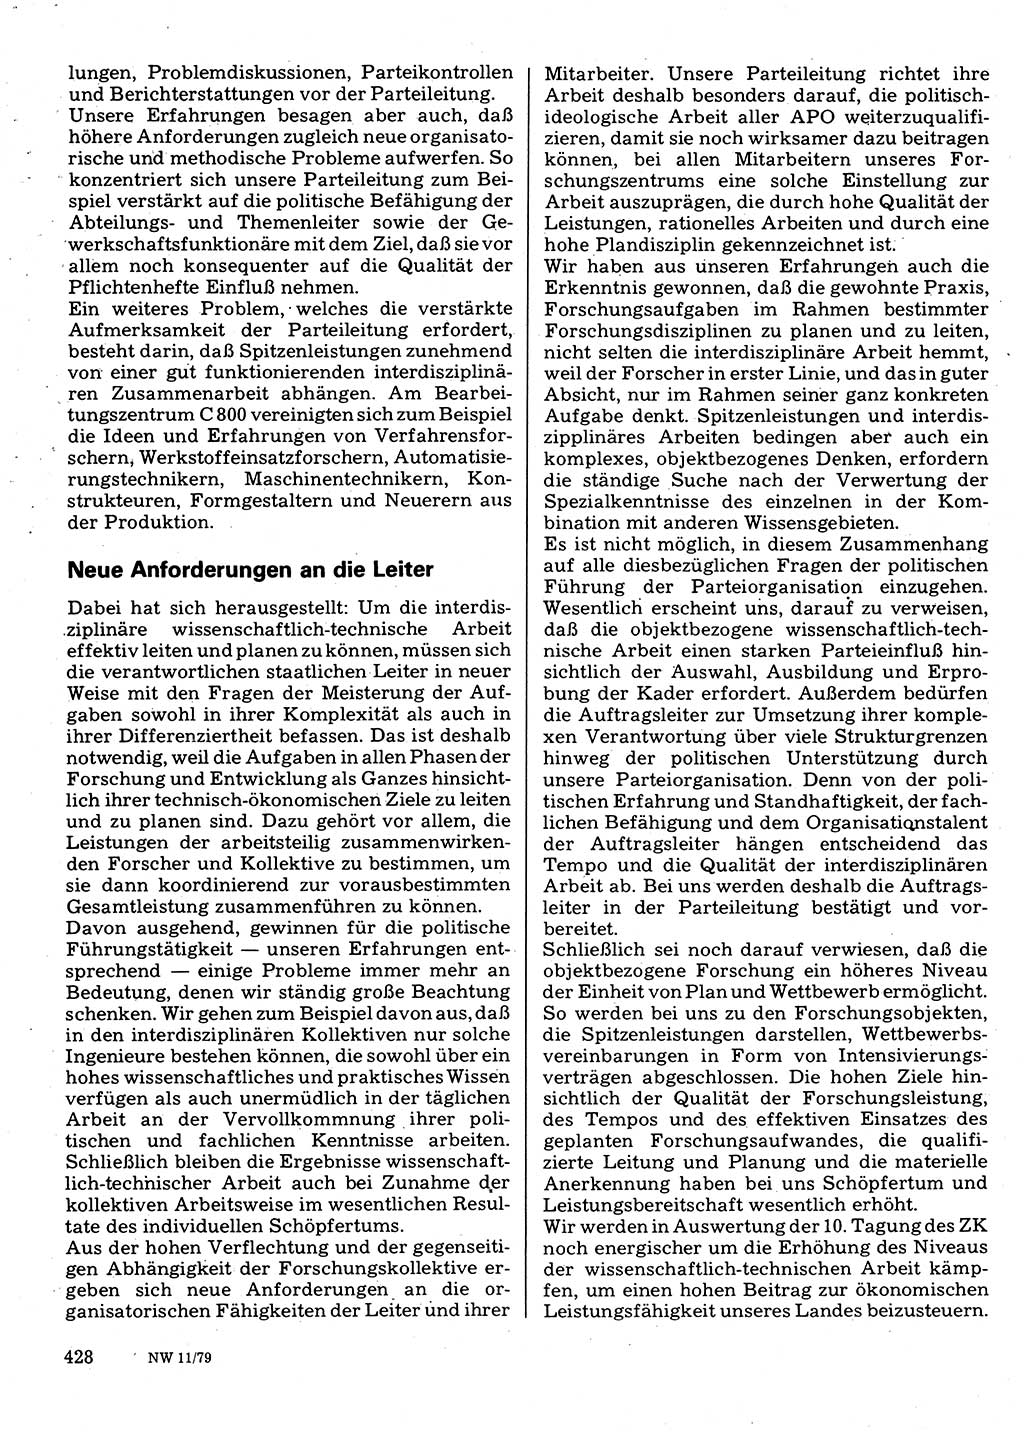 Neuer Weg (NW), Organ des Zentralkomitees (ZK) der SED (Sozialistische Einheitspartei Deutschlands) für Fragen des Parteilebens, 34. Jahrgang [Deutsche Demokratische Republik (DDR)] 1979, Seite 428 (NW ZK SED DDR 1979, S. 428)